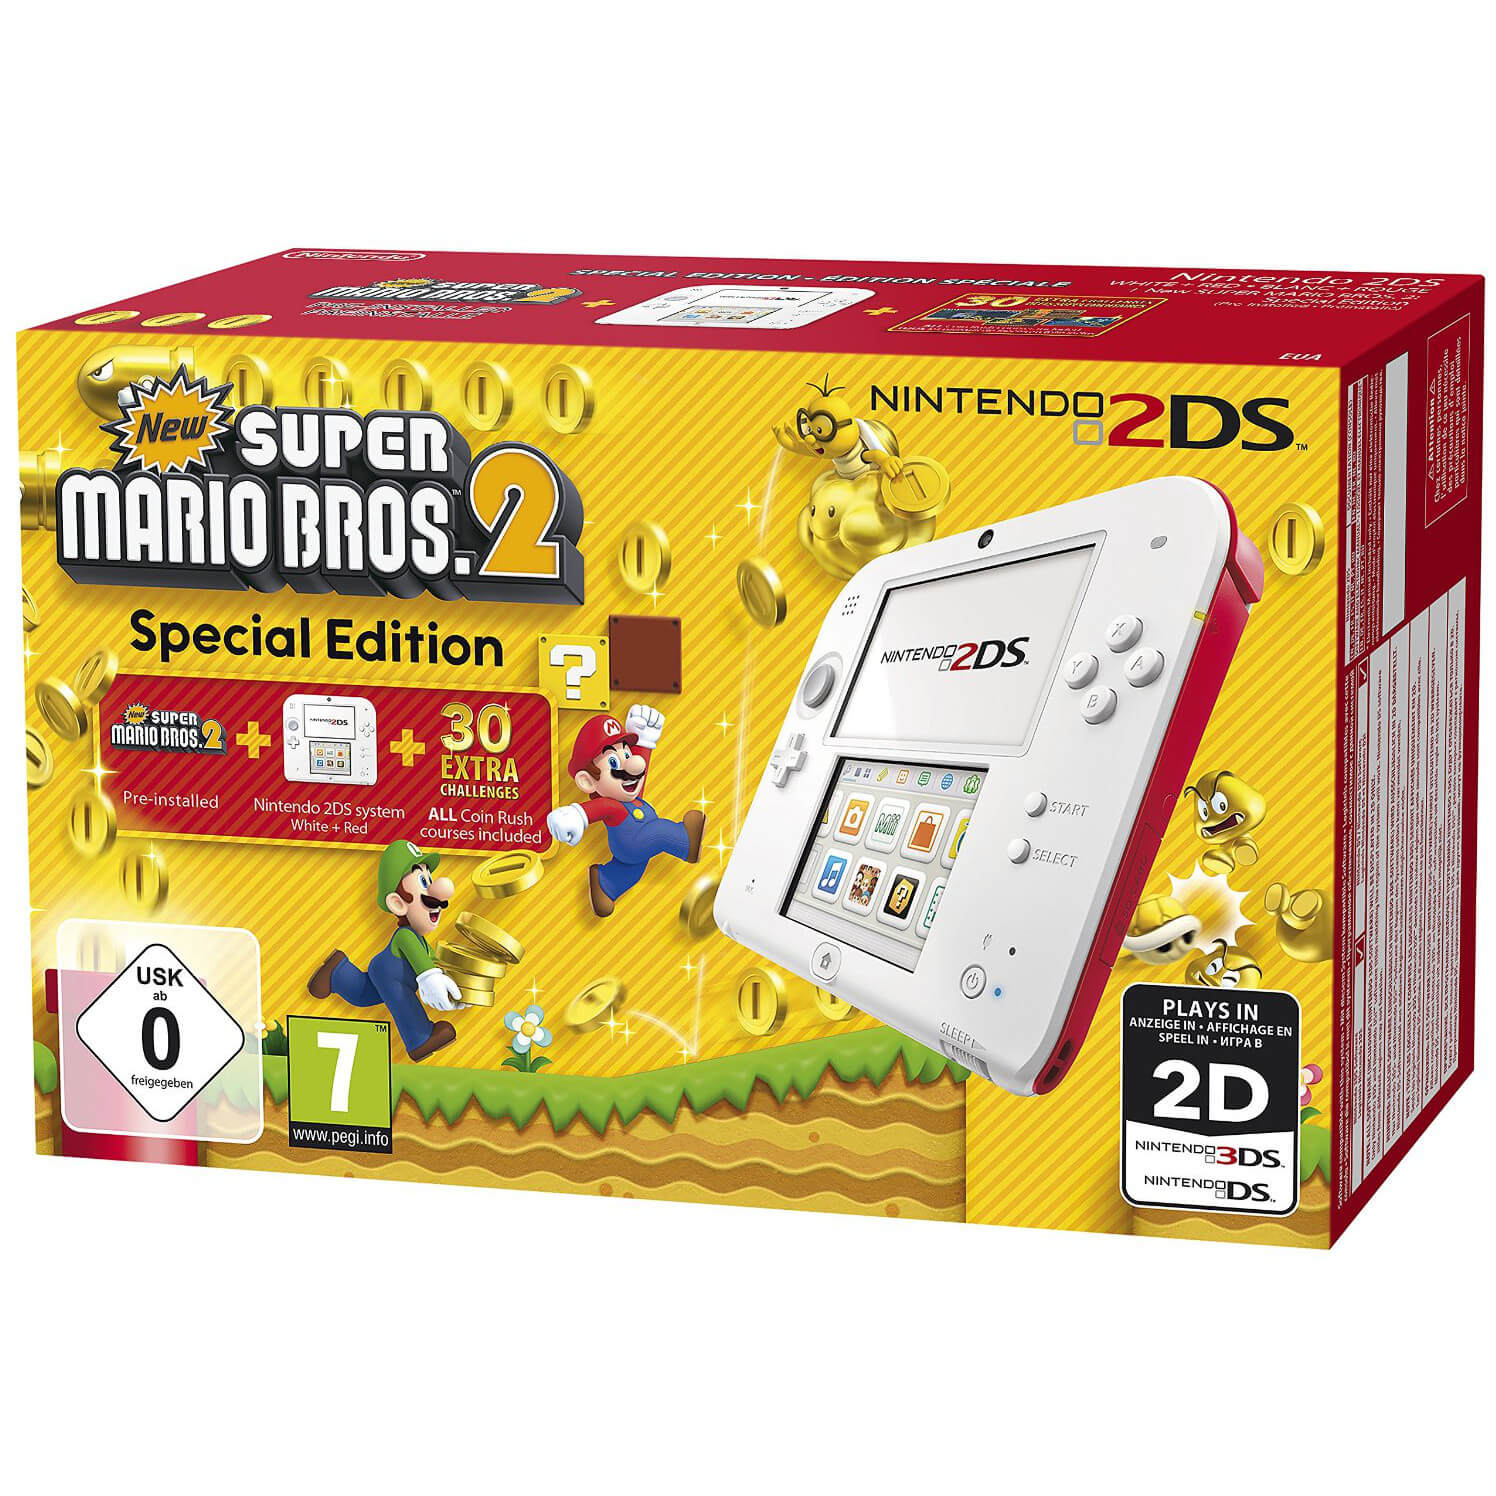 Consola Nintendo 2Ds, Super Mario Bros. 2 Special Edition, Alb/Rosu